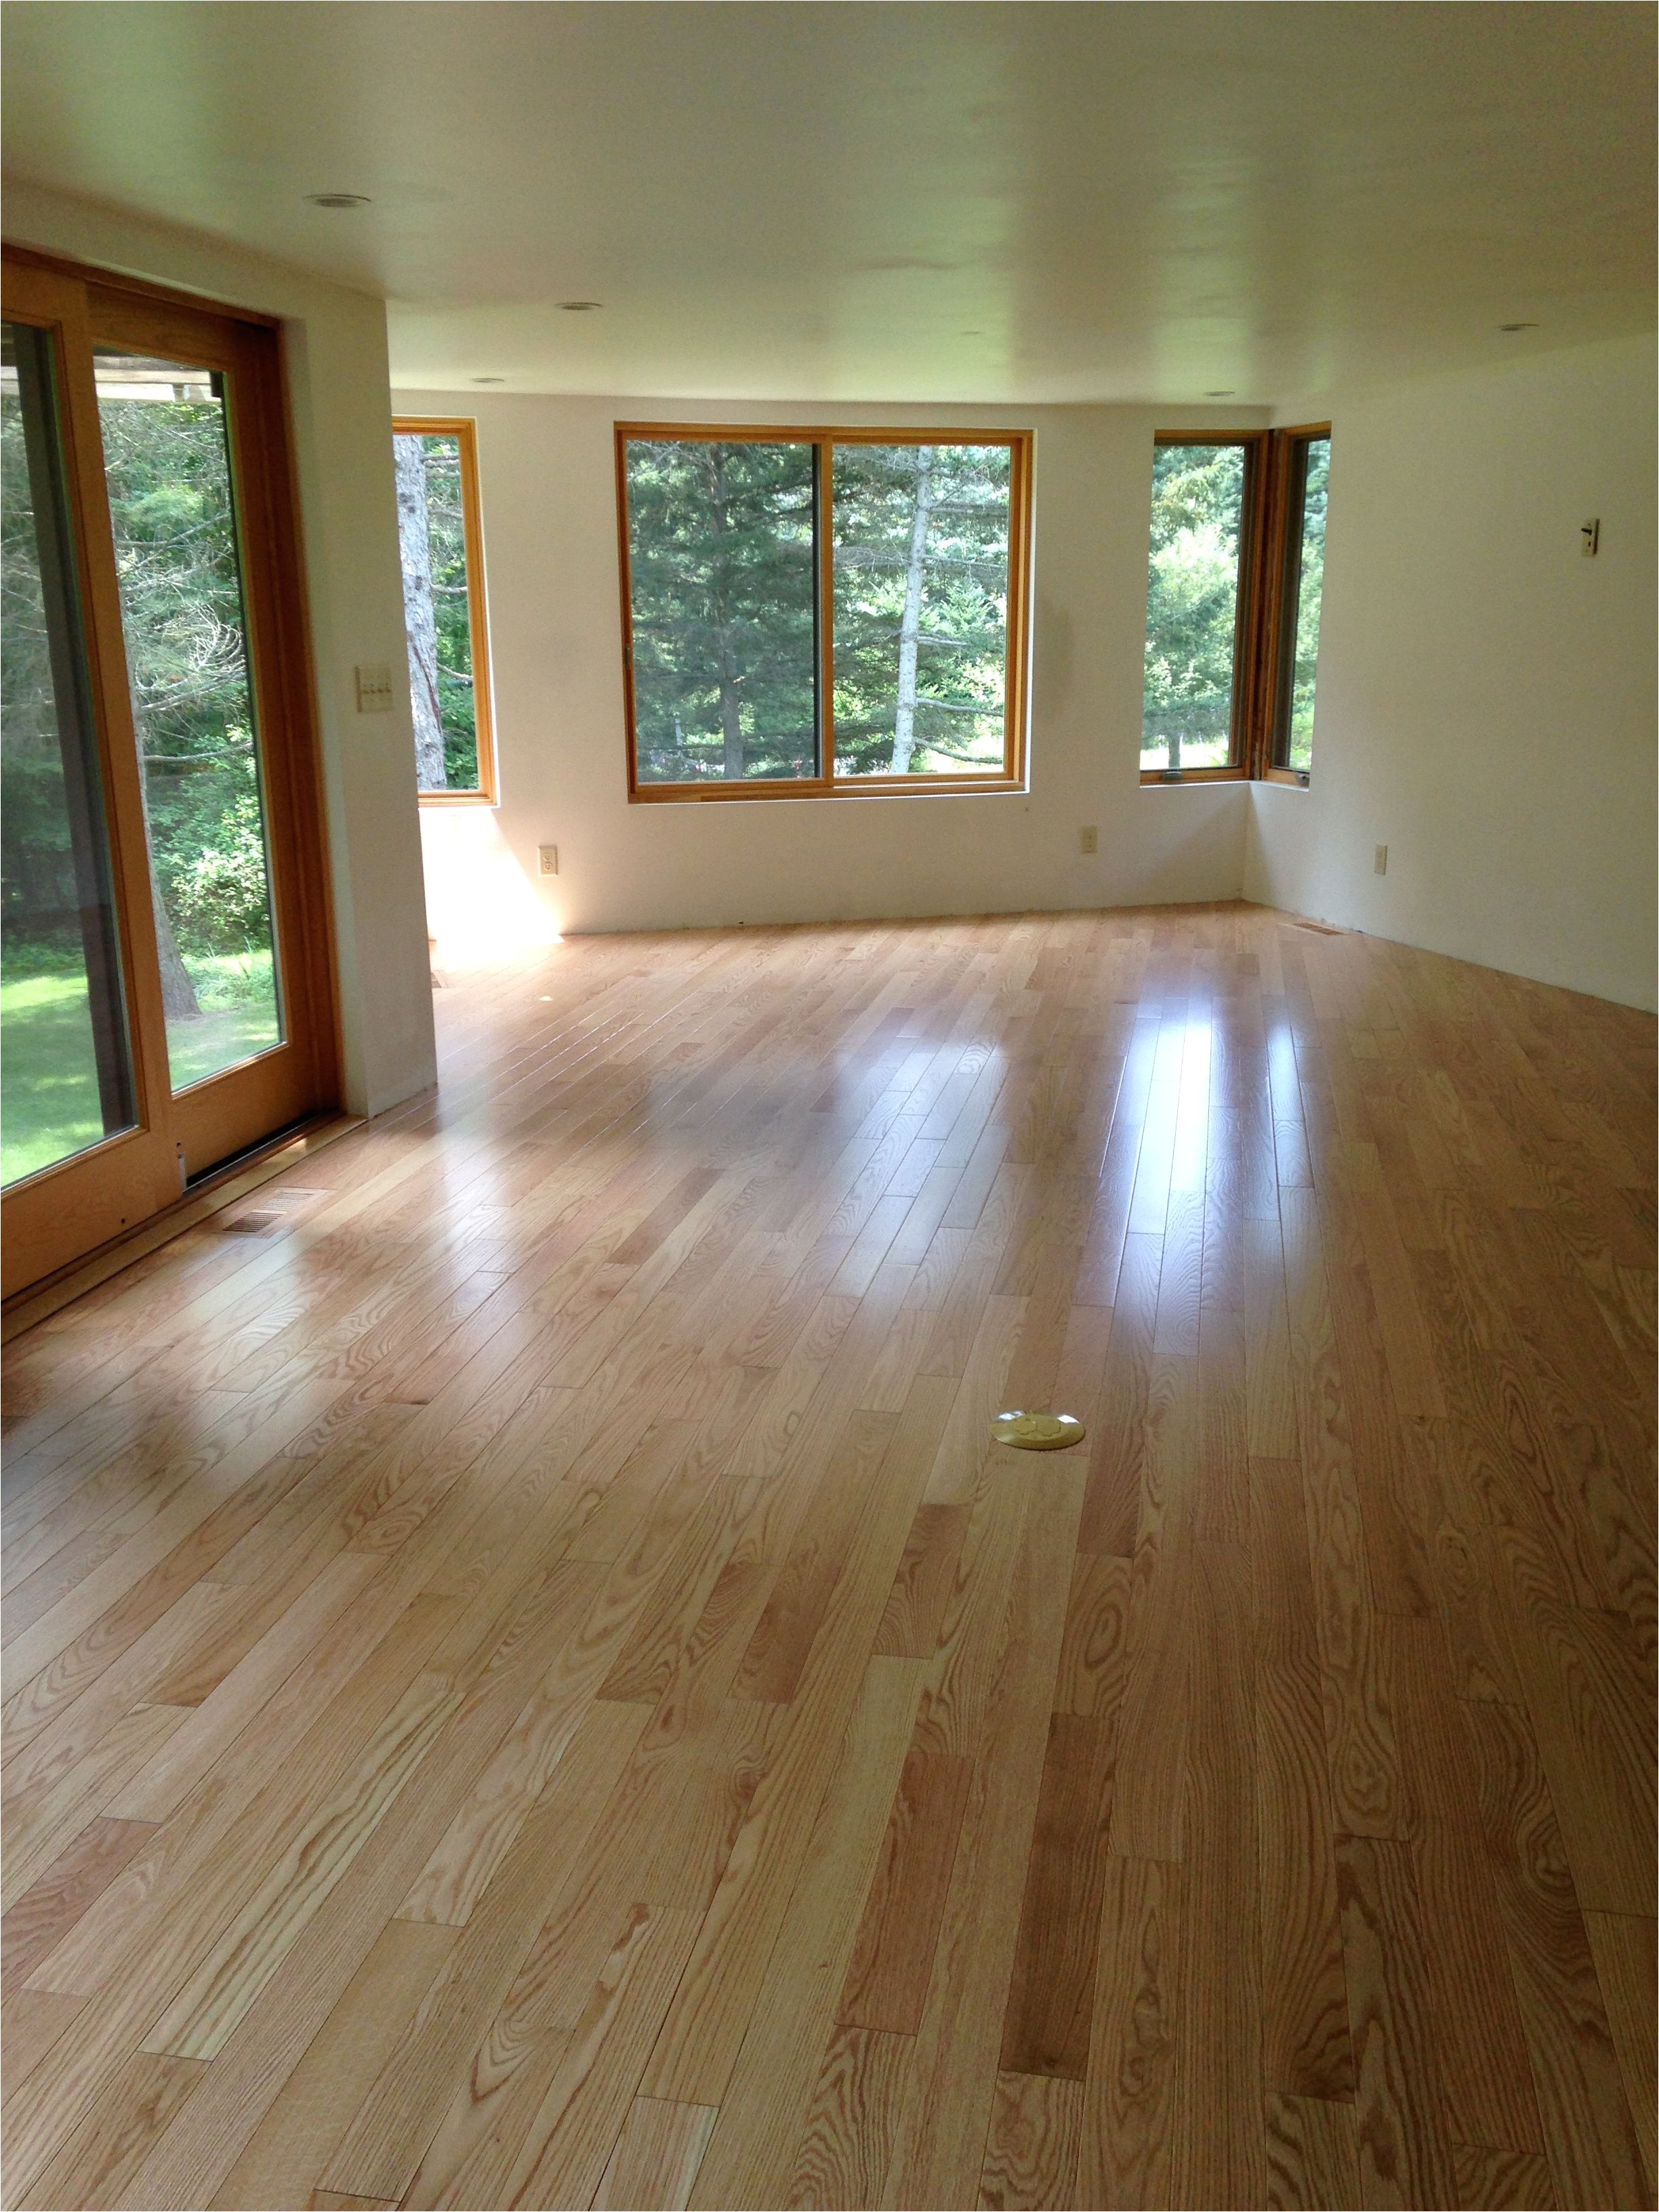 Hardwood Floor Refinishing Contractors Great Methods to Use for Refinishing Hardwood Floors Hardwood